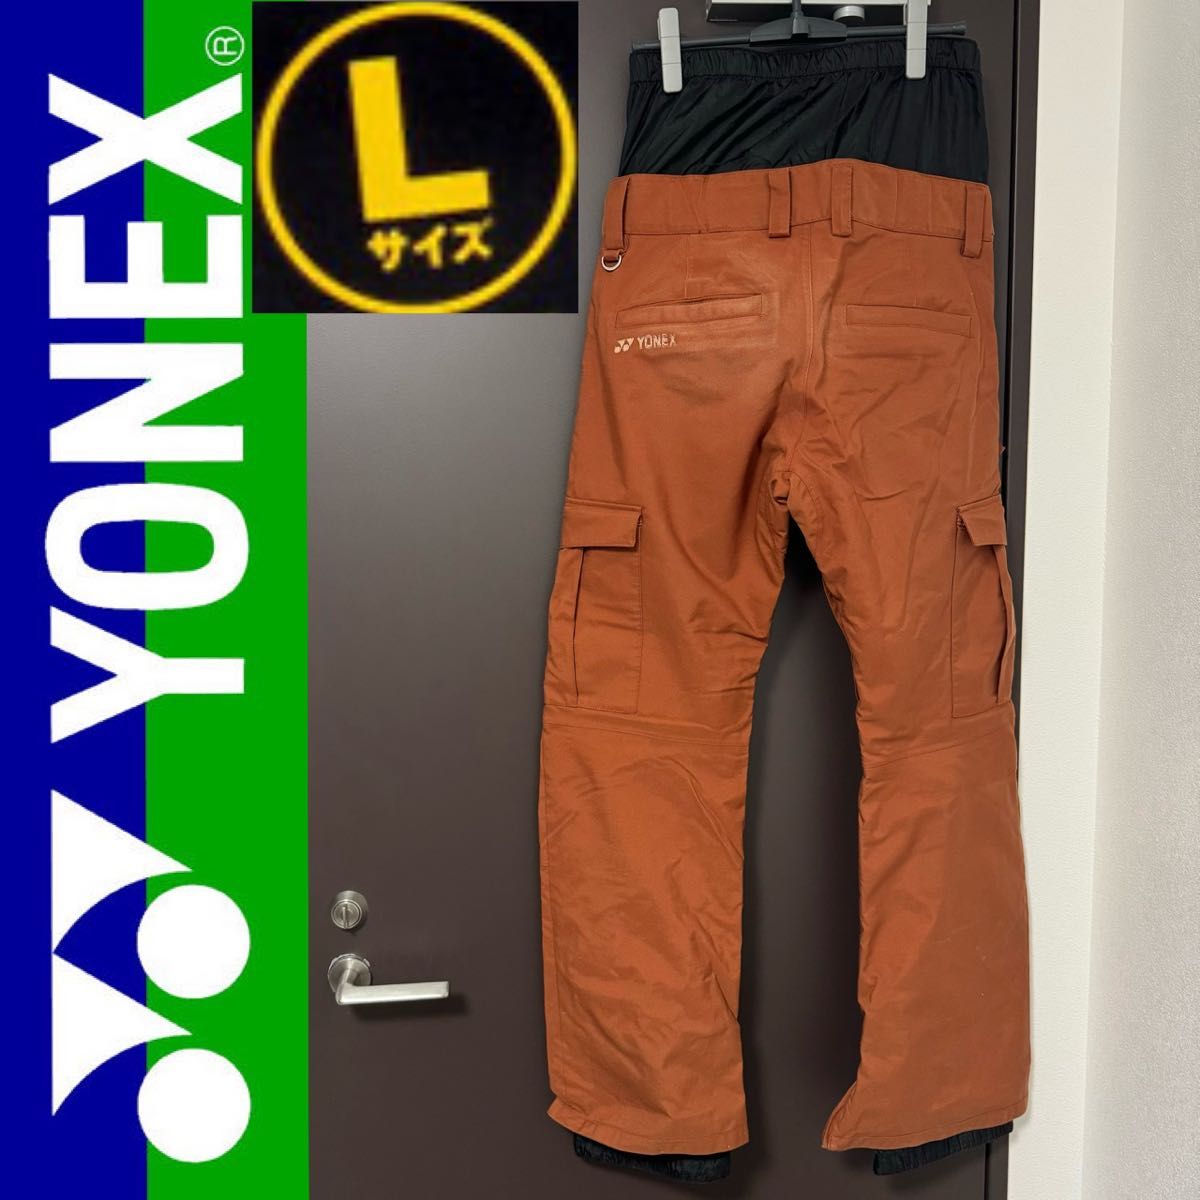 YONEX ヨネックス メンズ スノーボード スノボ ウエア ウェア Lサイズ メンズ L スノーボードウエア パンツ ズボン